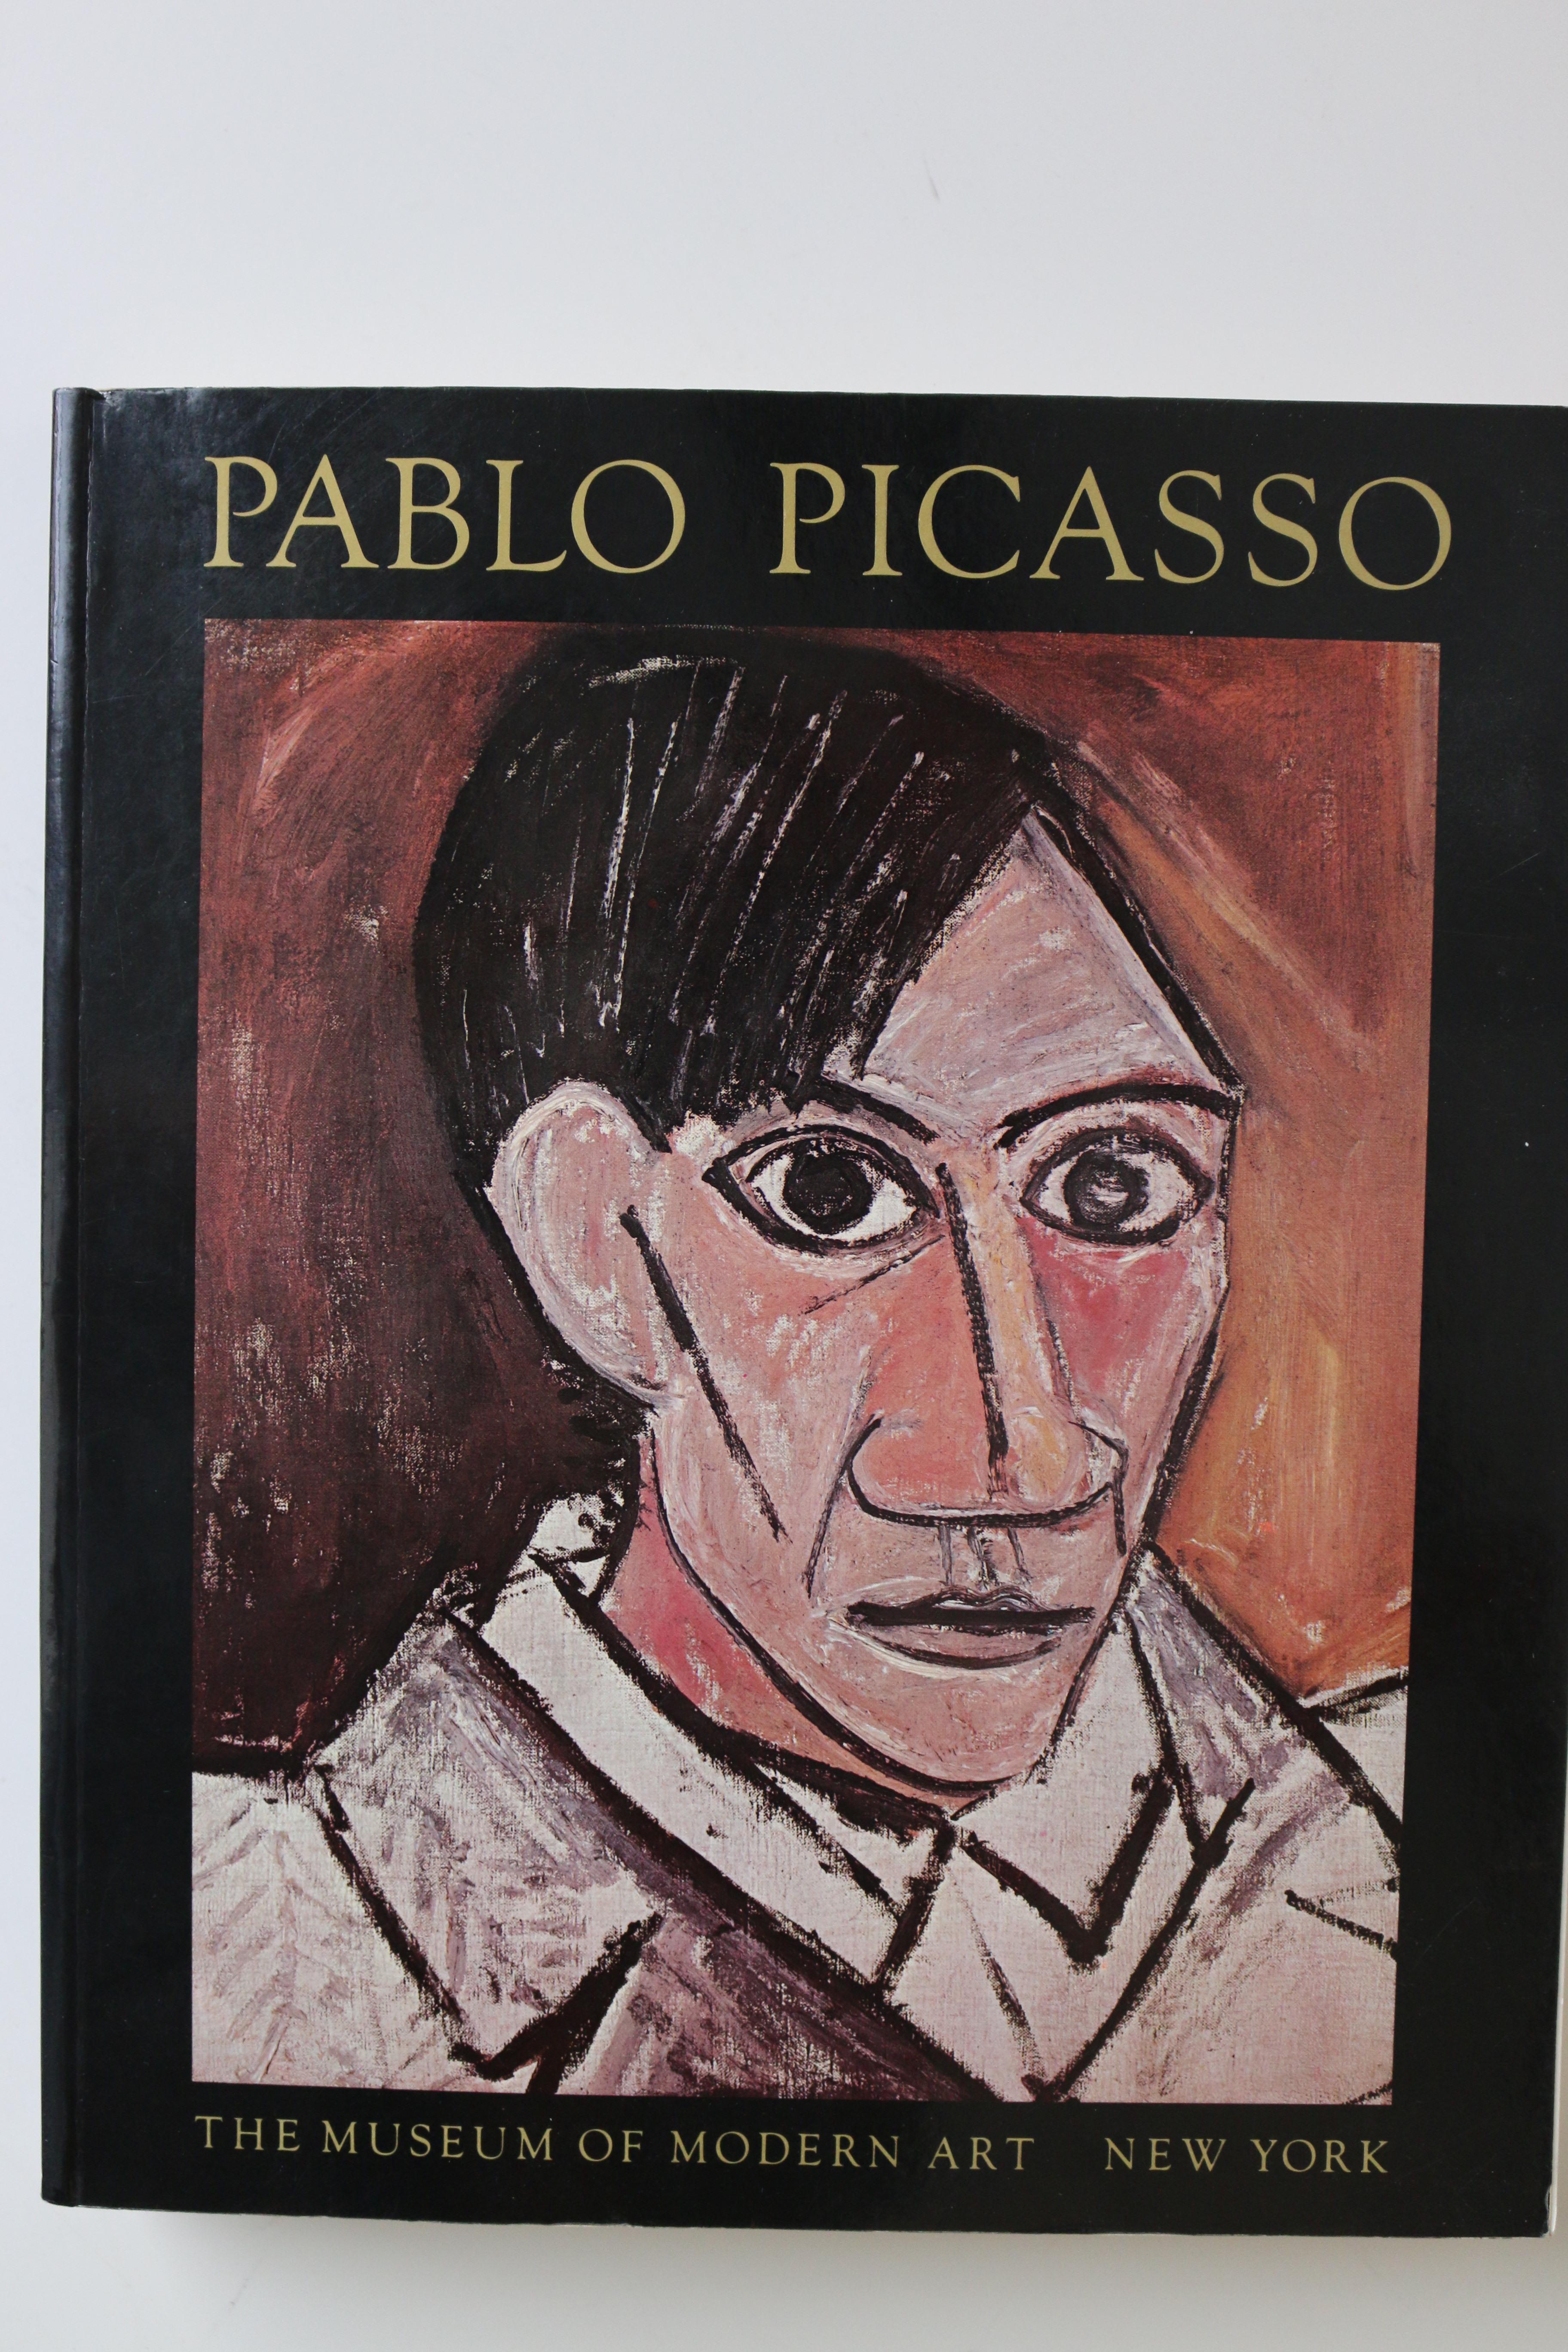 La collection de livres et d'articles de Picasso - Art de (after) Pablo Picasso